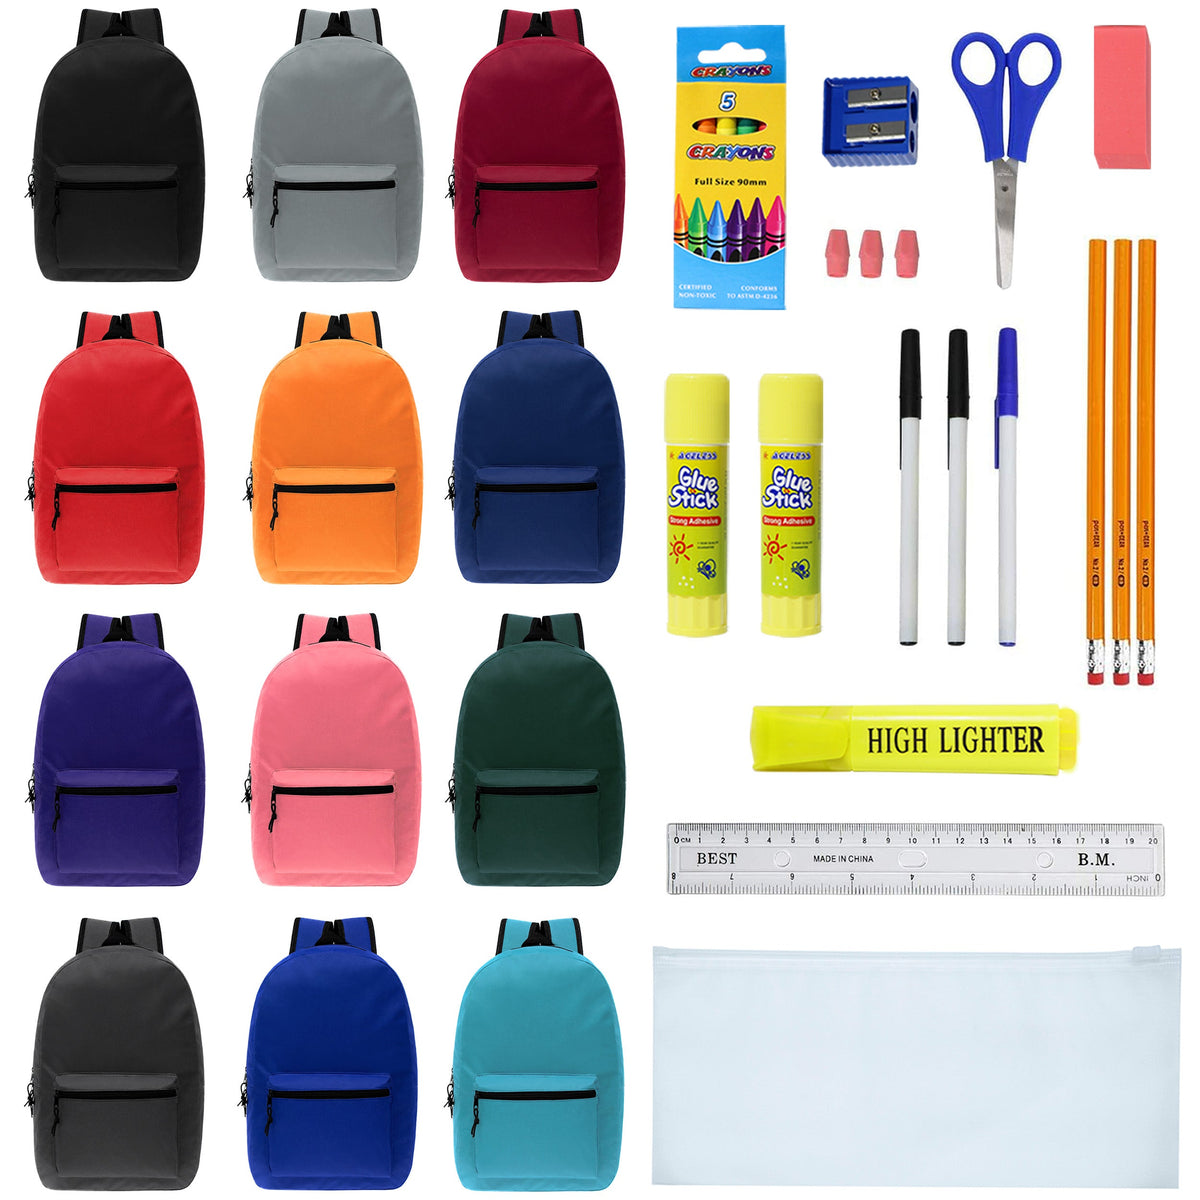 12 Color Assortment Kit